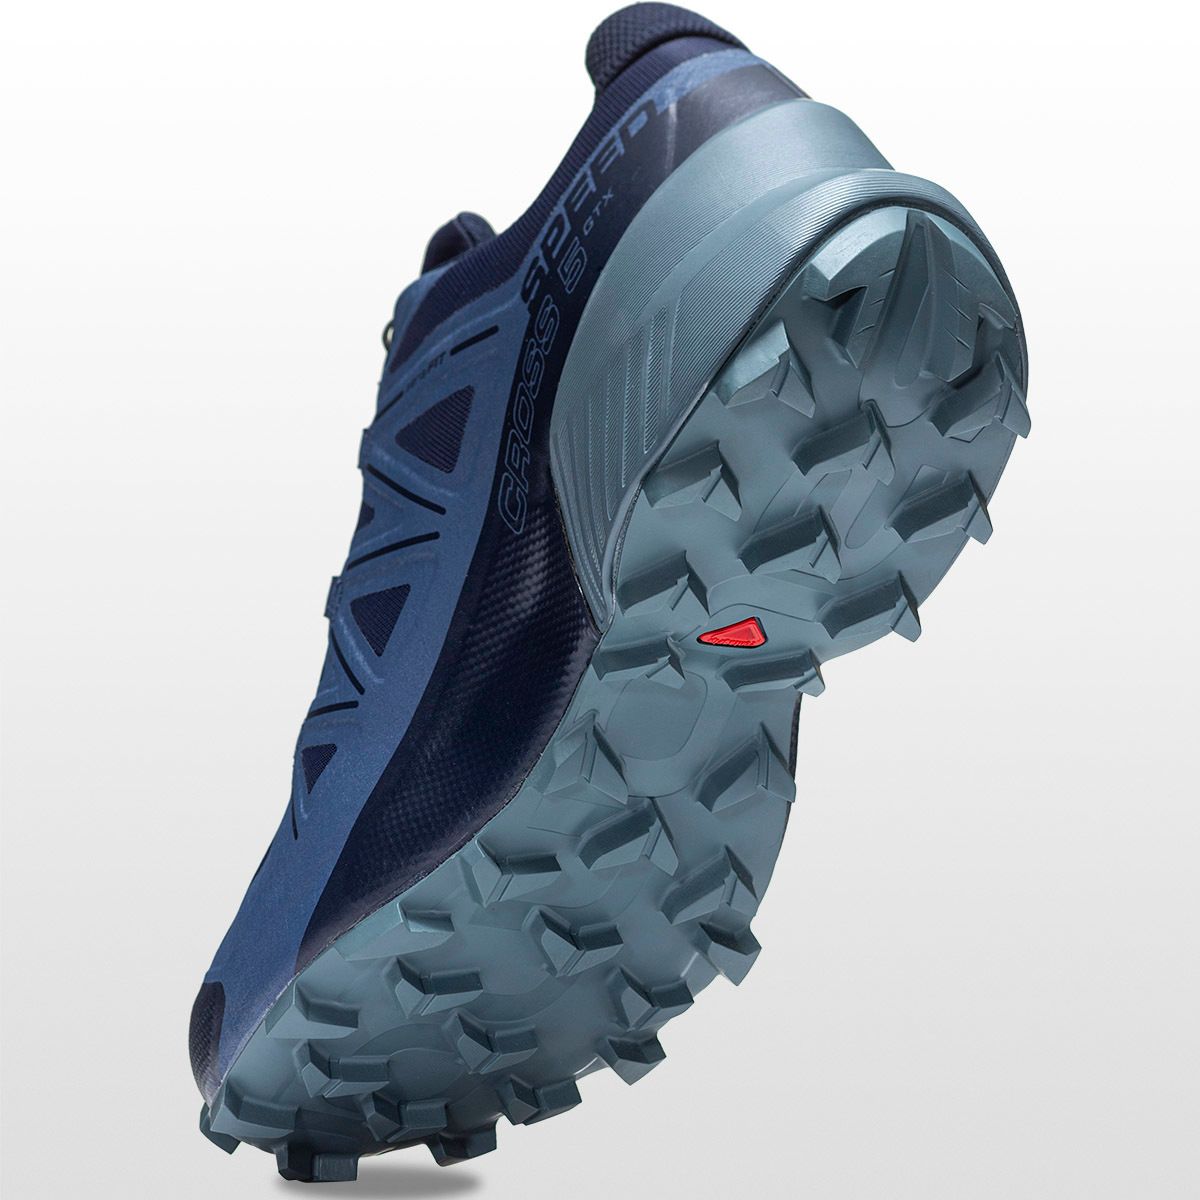 Gematigd Tijdig Doornen Salomon Speedcross 5 GTX Trail Running Shoe - Men's - Men